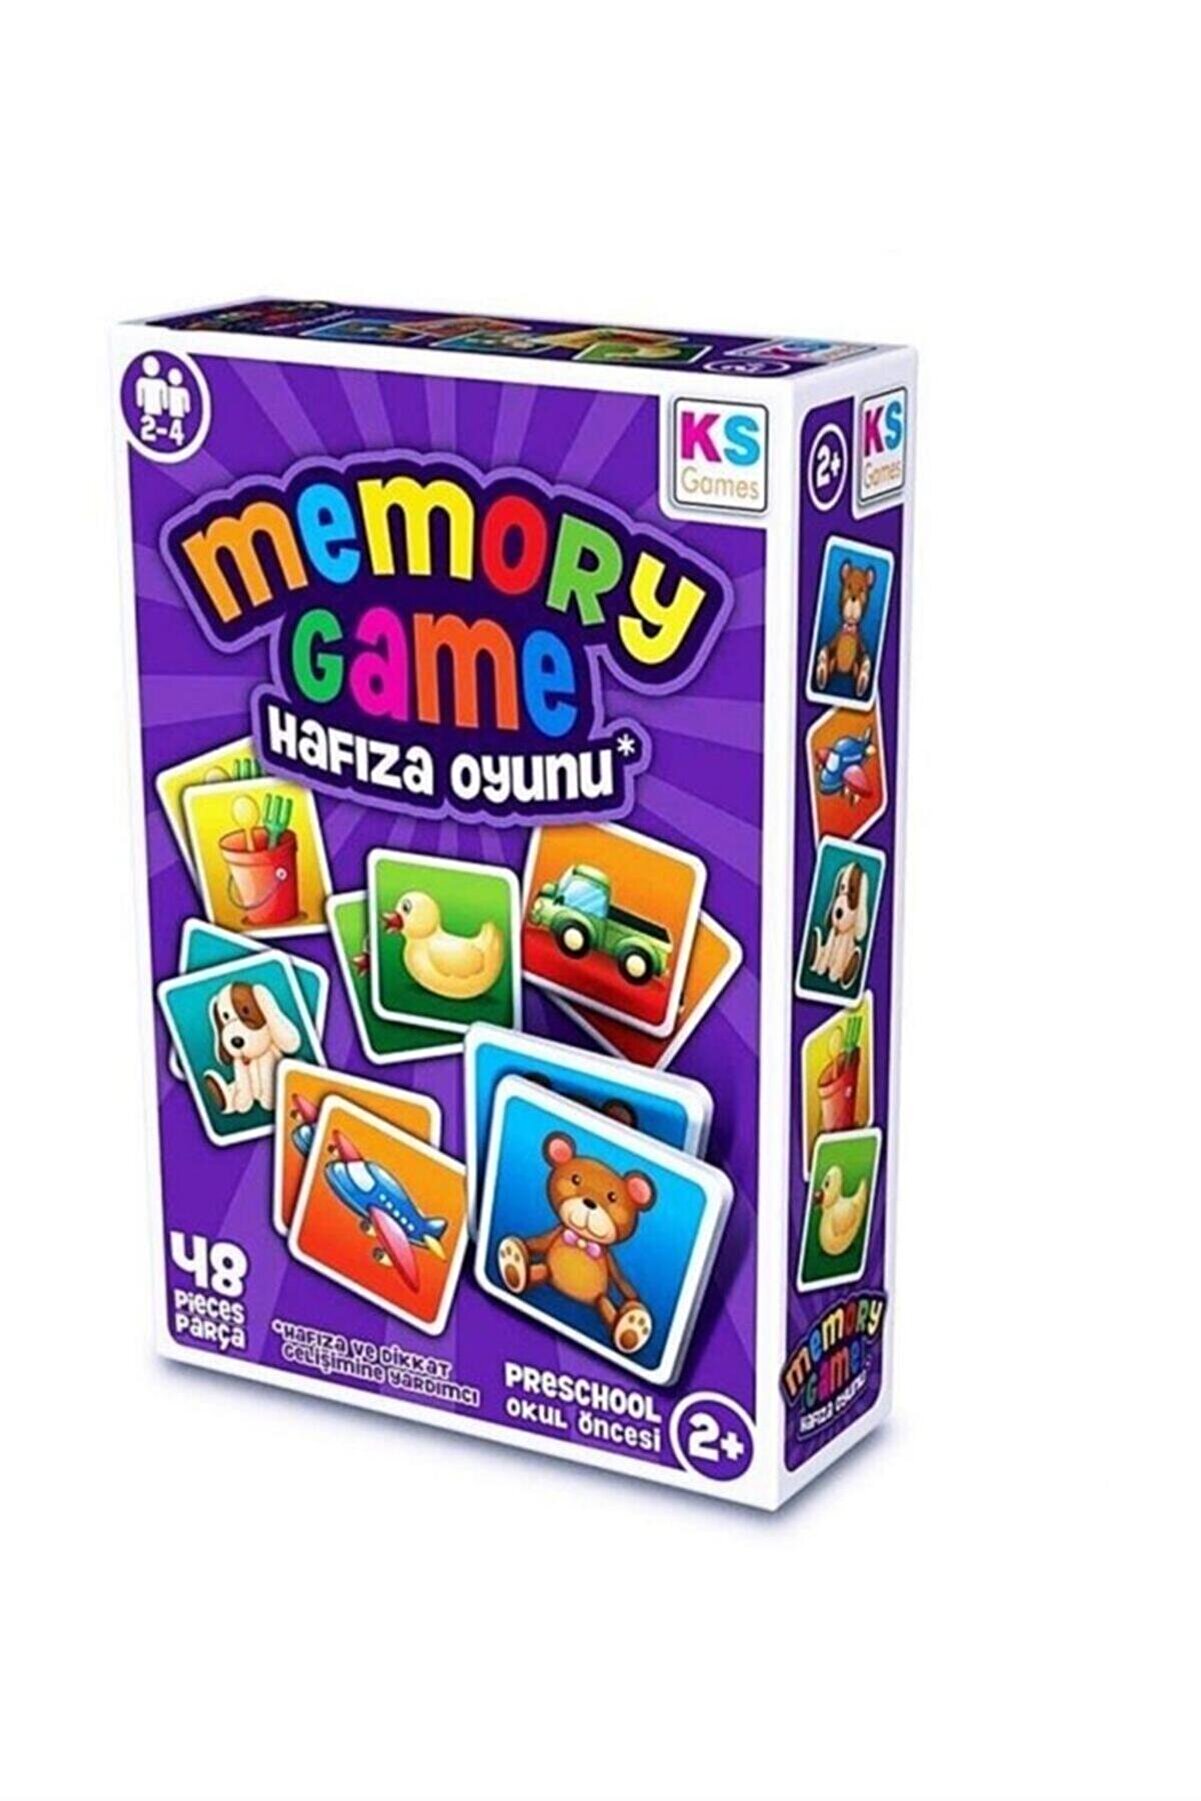 Ks Games Memory Game Hafıza Oyunu